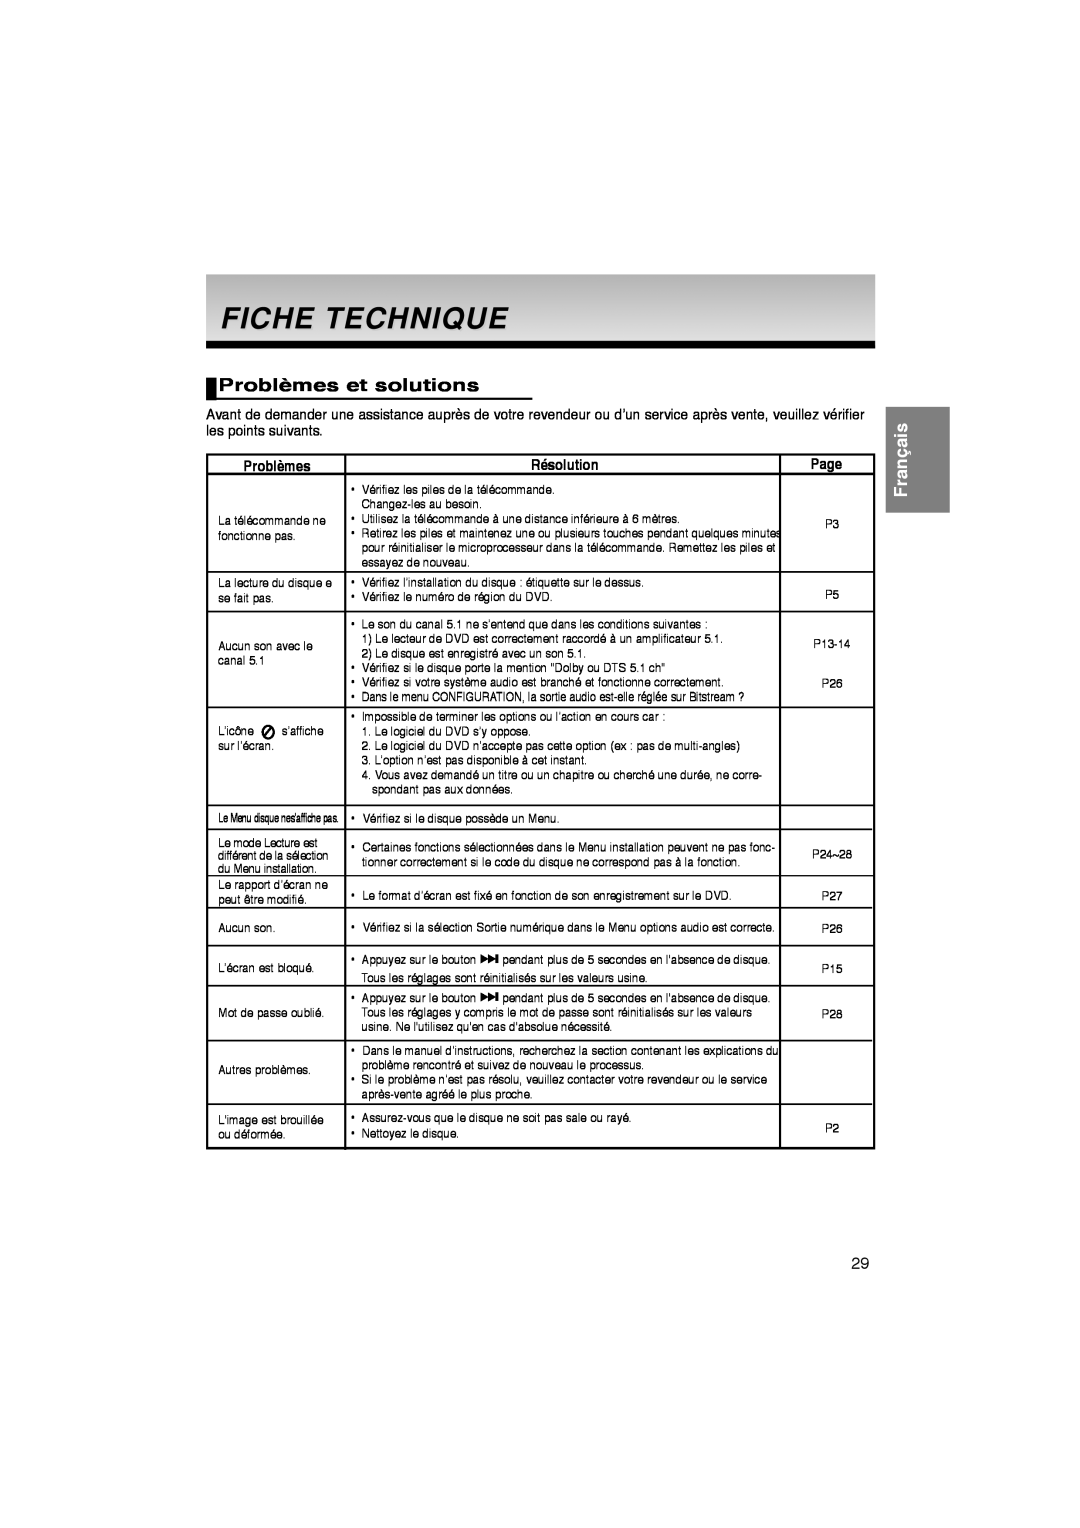 Samsung DVD-P260K/AFR manual Fiche Technique, Problèmes et solutions, Résolution, Page, Français 